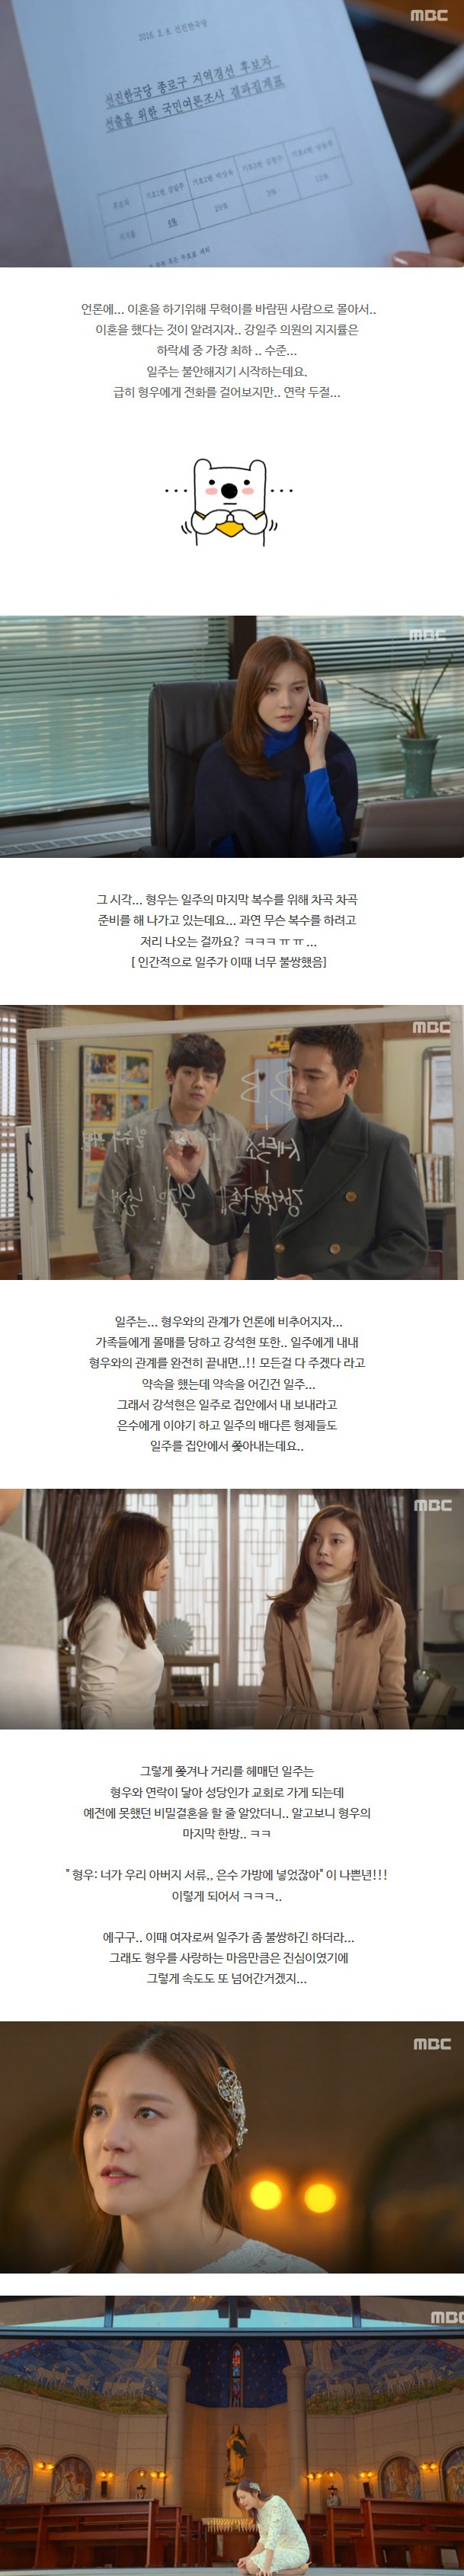 episode 36 captures for the Korean drama 'Glamorous Temptation'